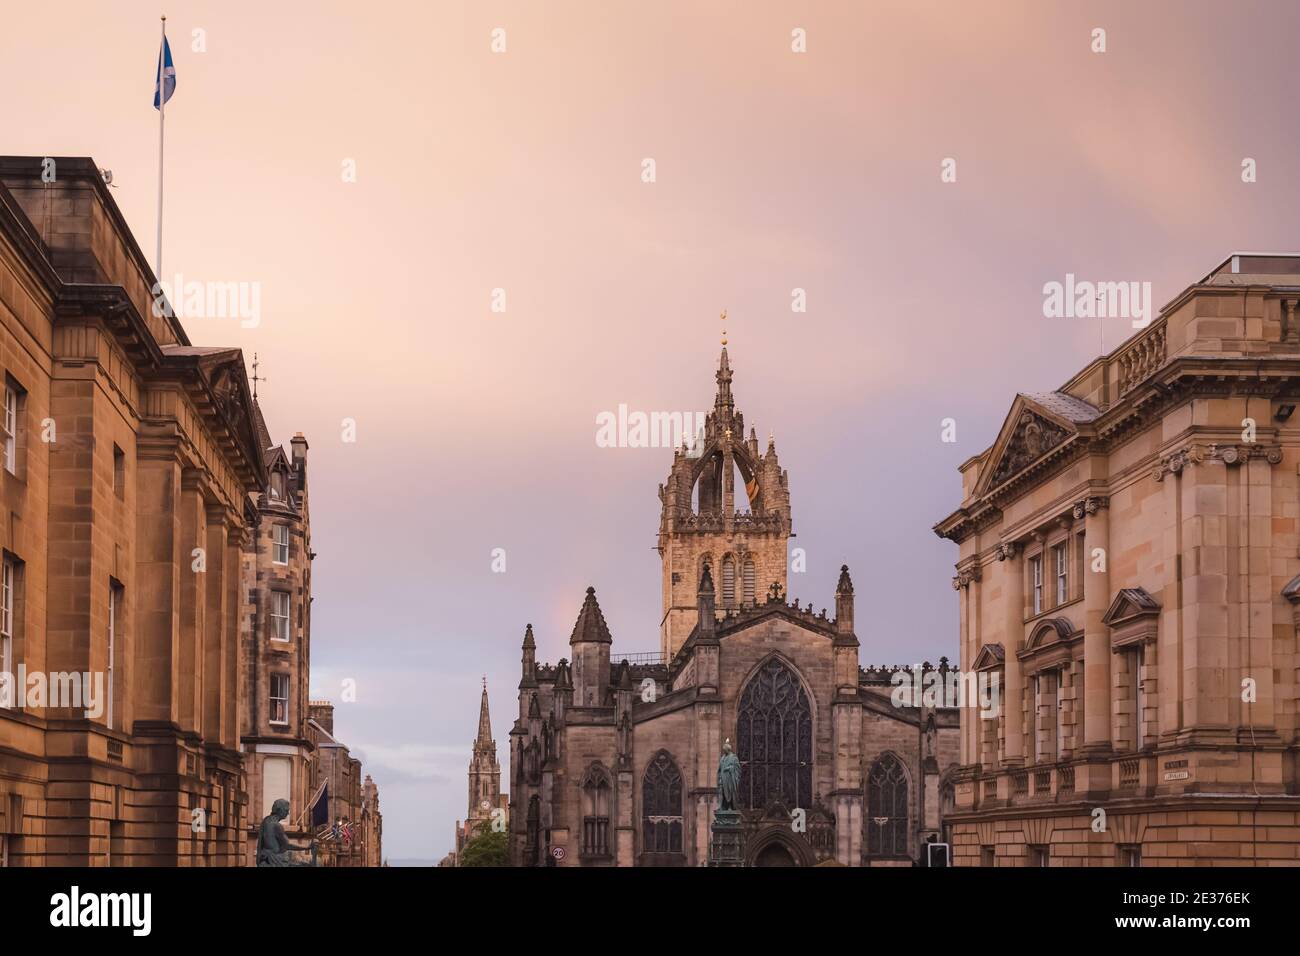 L'architettura gotica della Cattedrale di San Giles lungo l'Alto Corte di Justiciary contro un cielo di tramonto drammatico lungo il Royal Mile a Edinburgh' Foto Stock